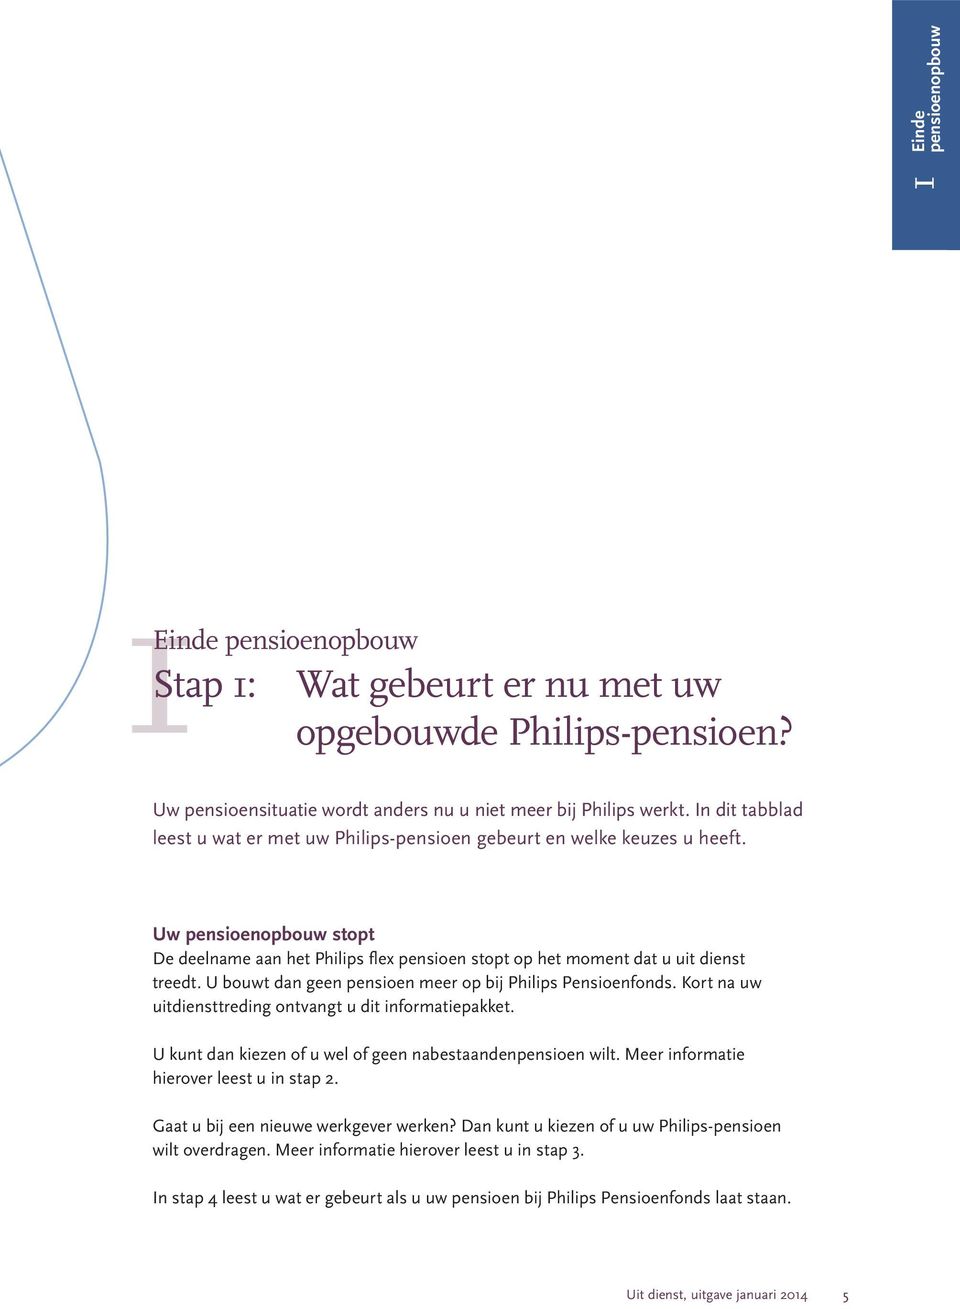 U bouwt dan geen pensioen meer op bij Philips Pensioenfonds. Kort na uw uitdiensttreding ontvangt u dit informatiepakket. U kunt dan kiezen of u wel of geen nabestaandenpensioen wilt.